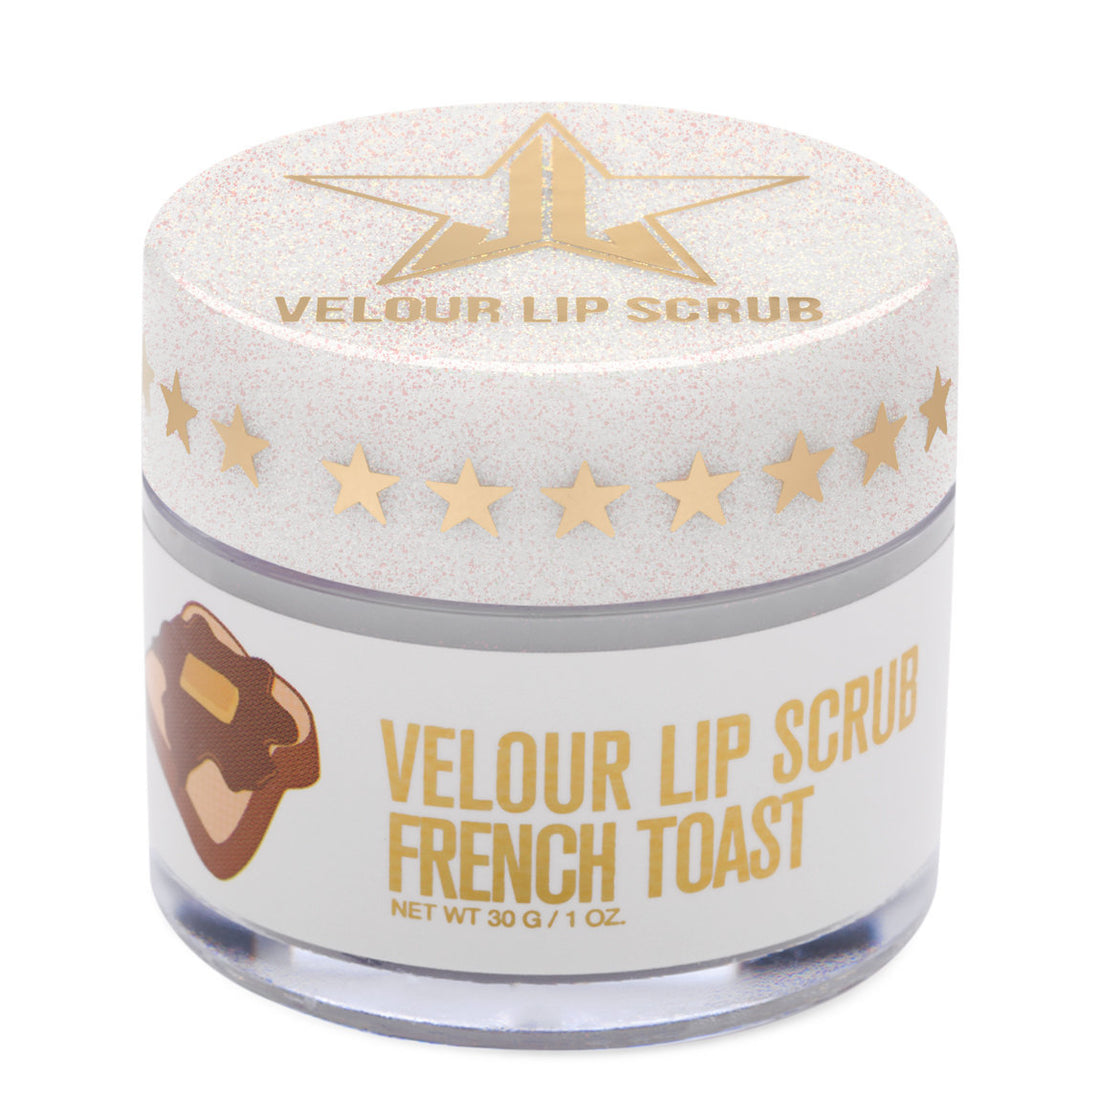 Velour Lip Scrub - French Toast